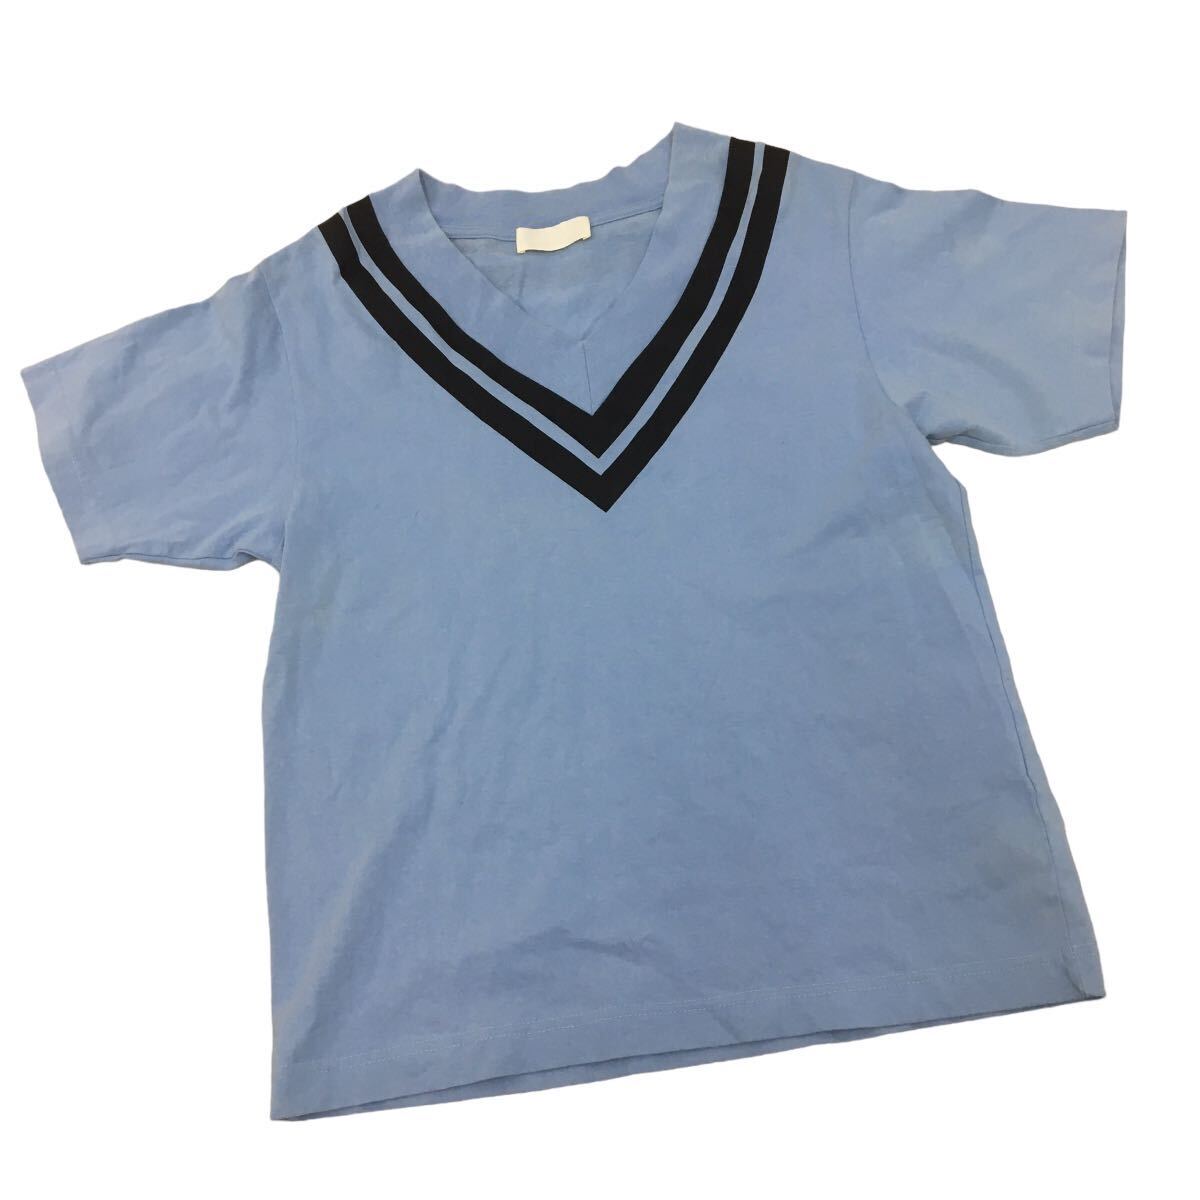 C346 NEON SIGN ネオンサイン 半袖 Tシャツ ティシャツ トップス カットソー メンズ 46 ライトブルー 水色 コットン 綿 100%_画像1